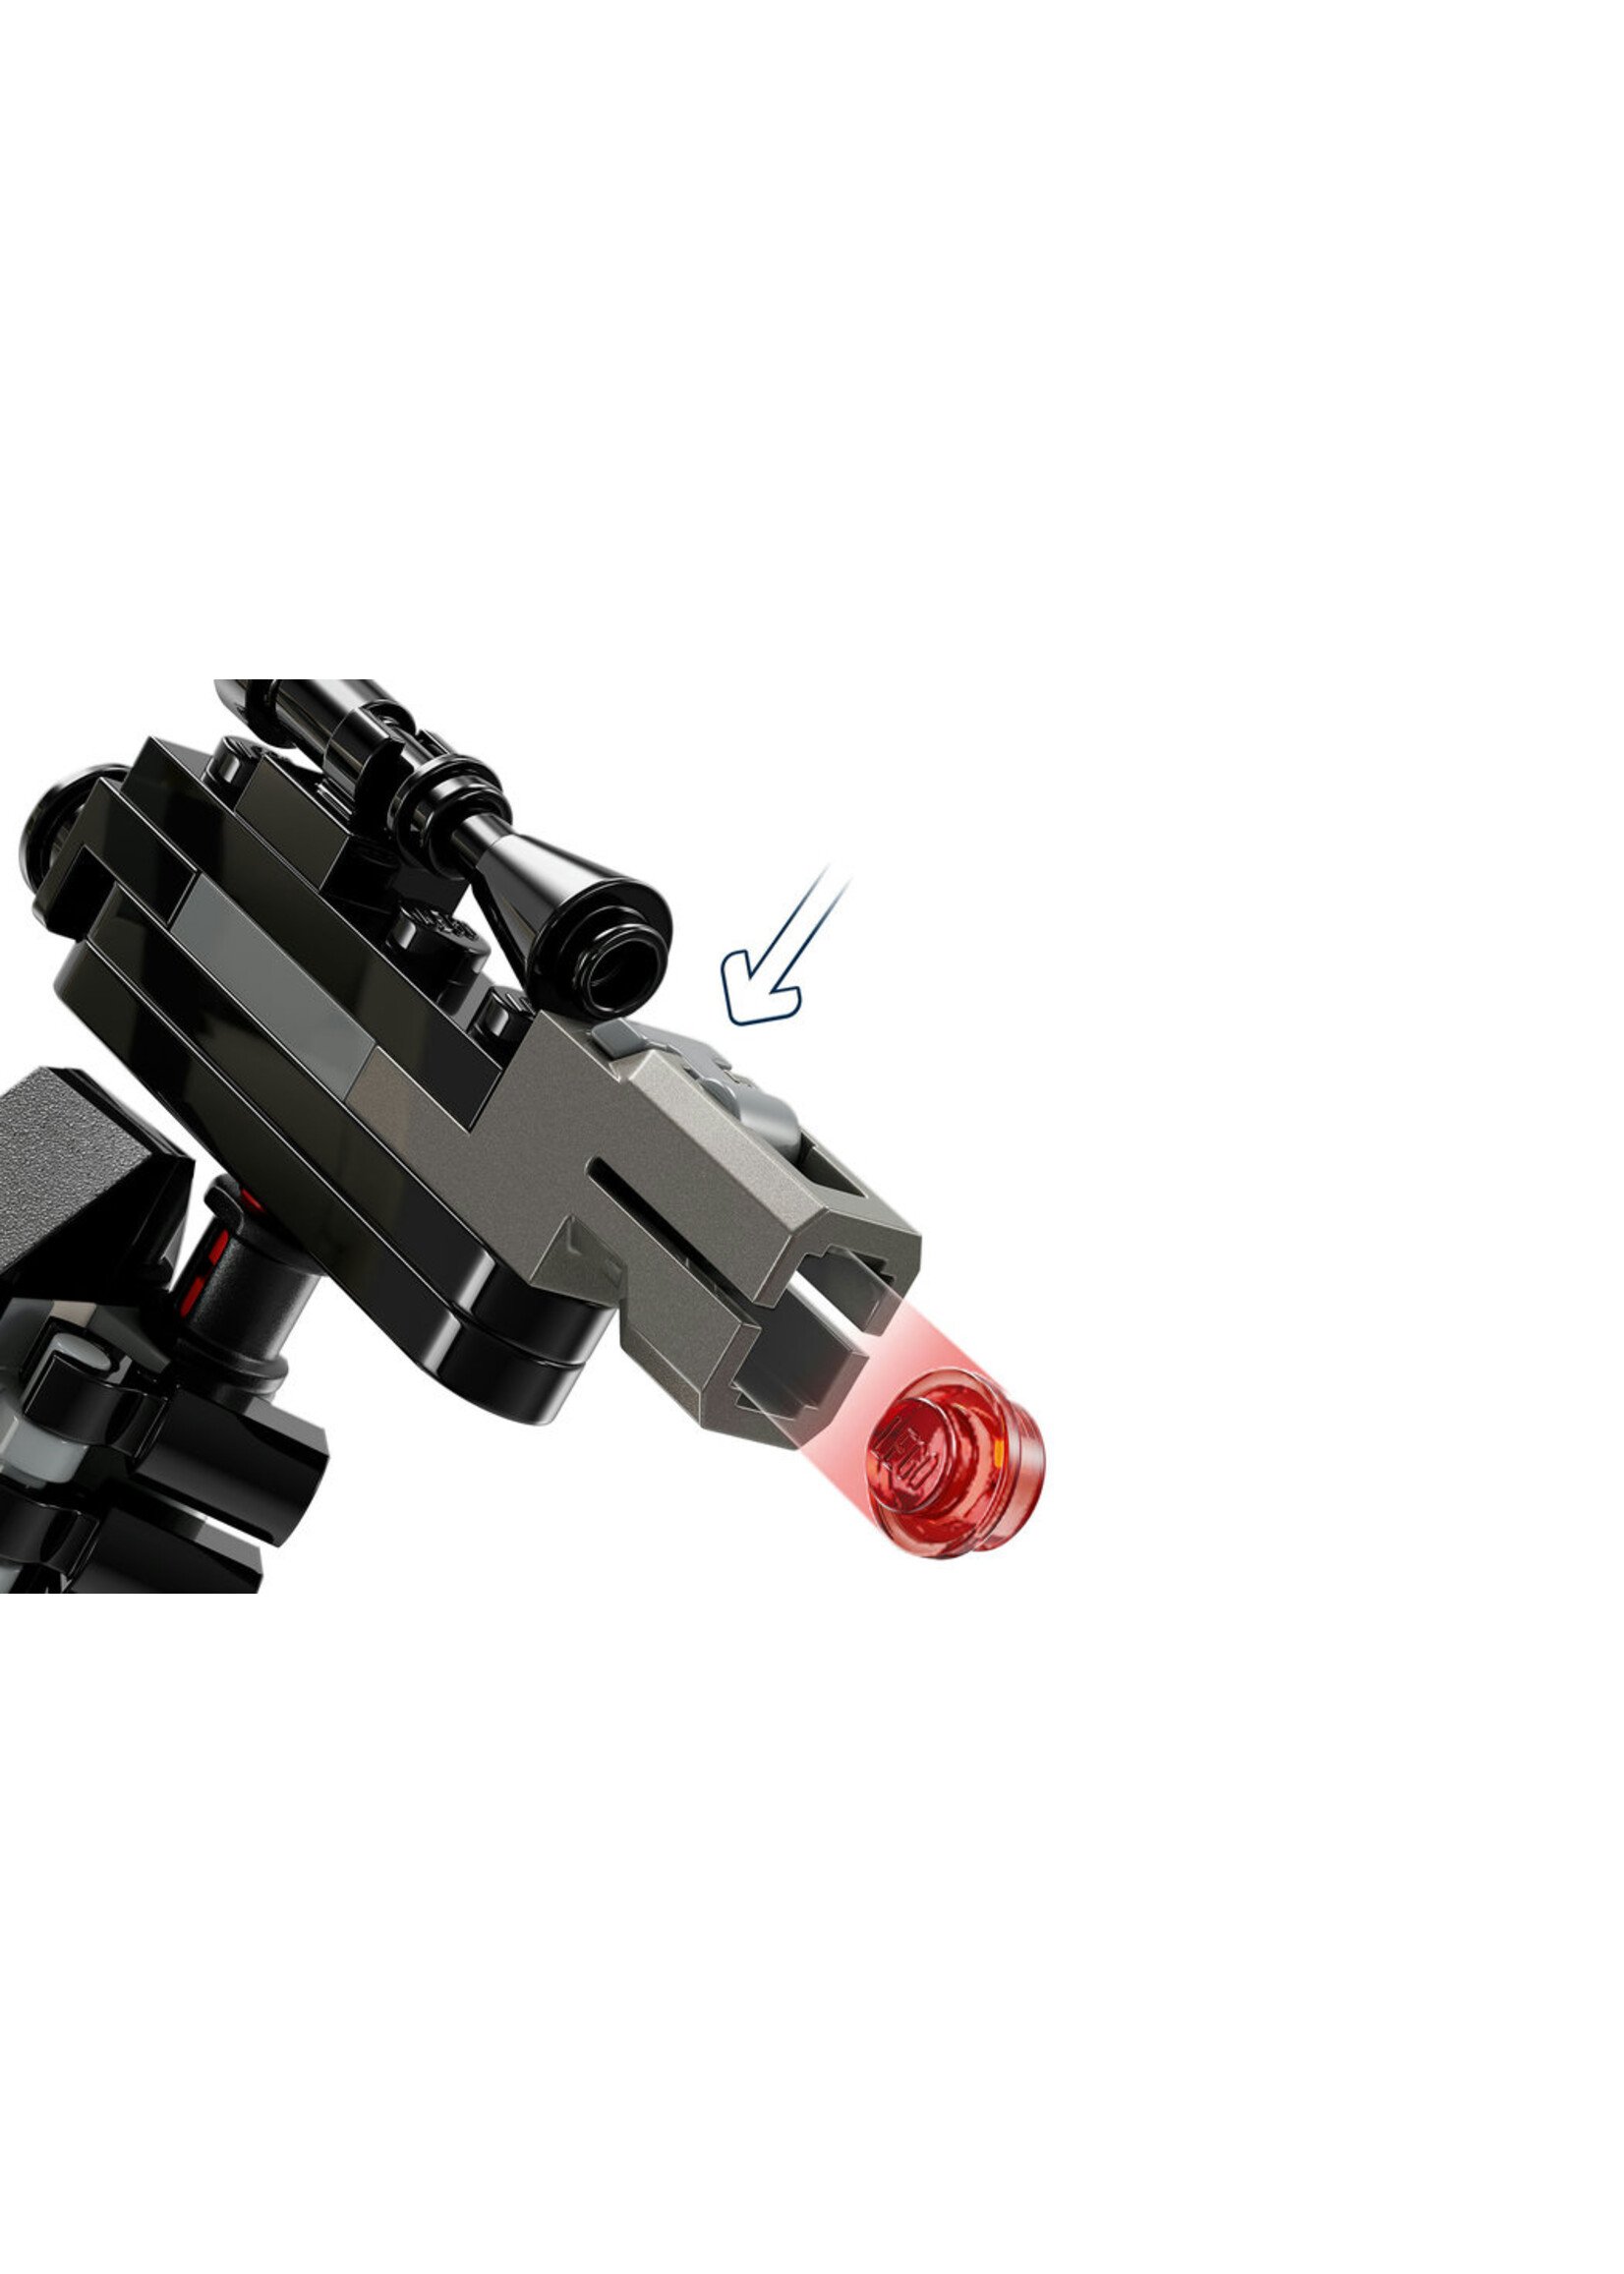 LEGO 75370 - Stormtrooper Mech